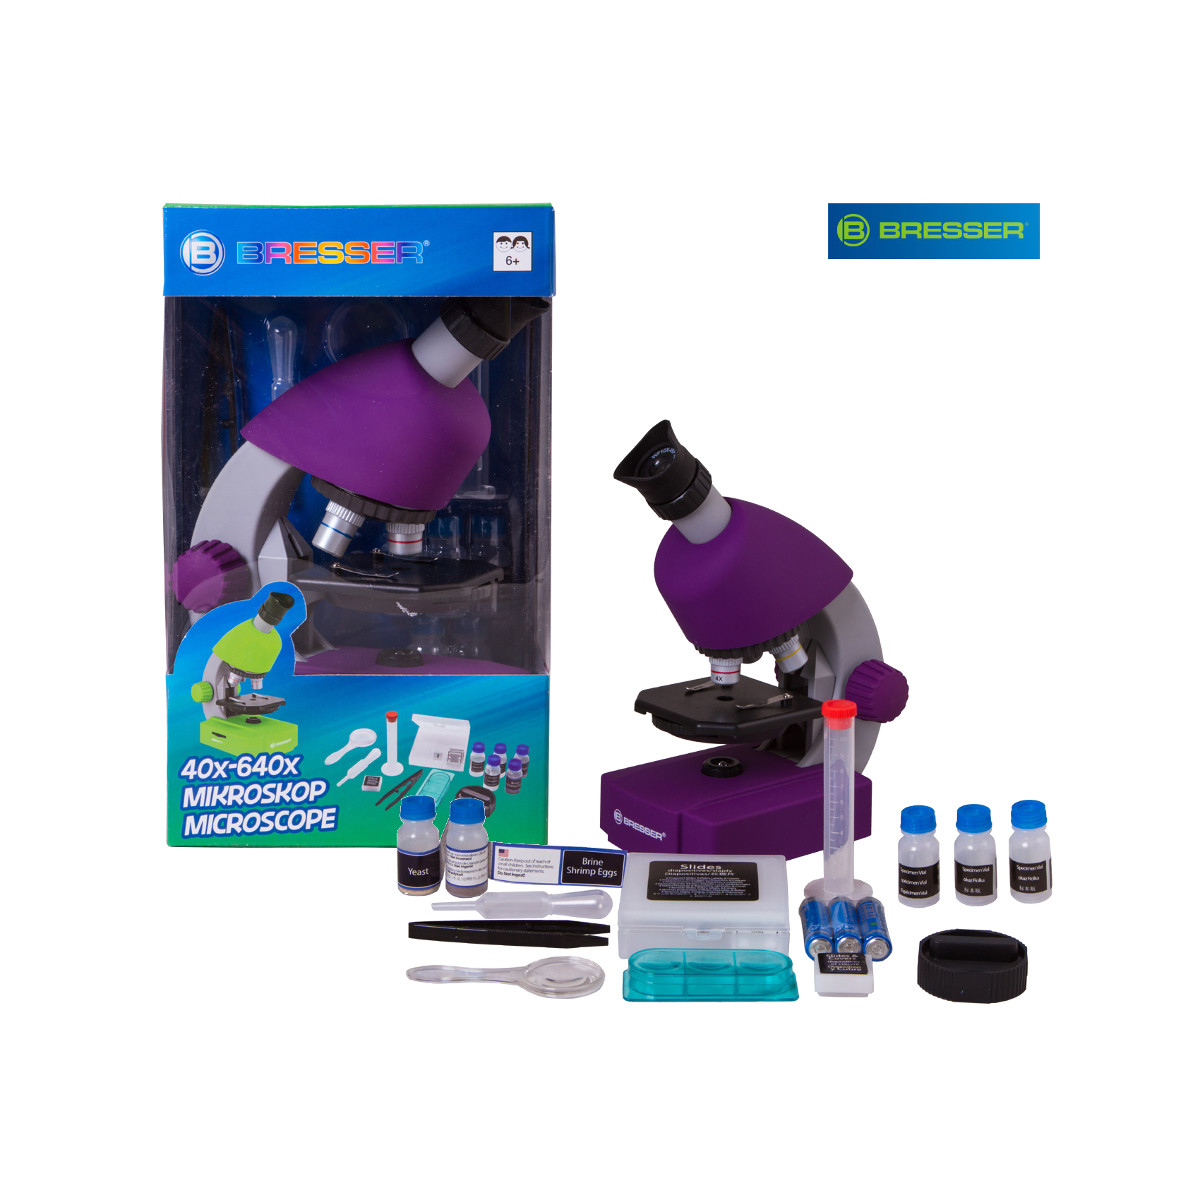 Bresser Junior 40x-640x, фиолетовый микроскоп